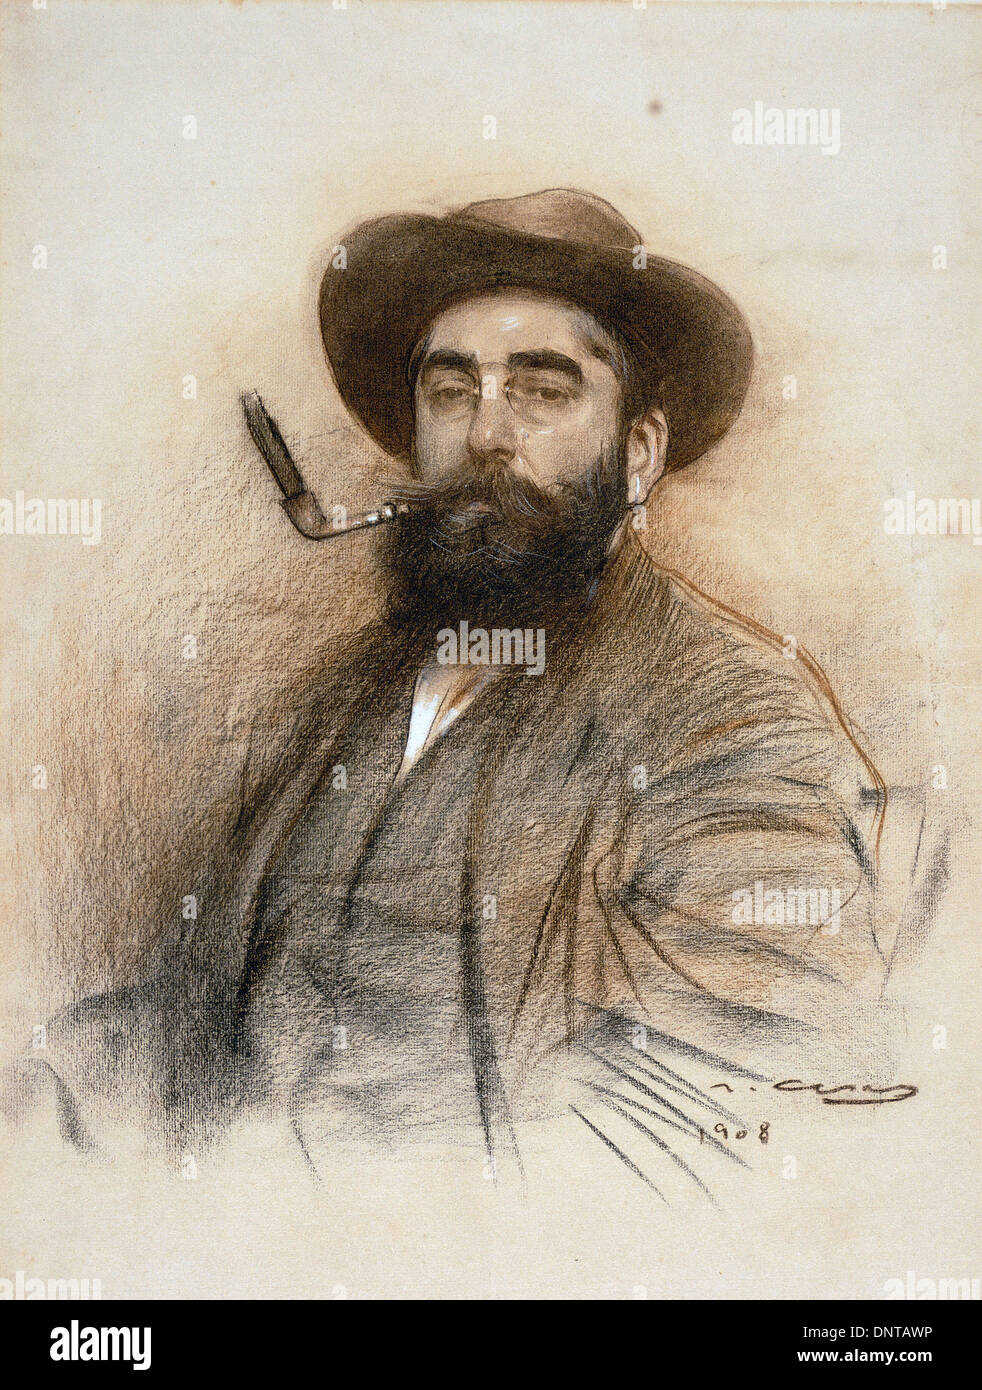 Ramon Casas i Carbo, autoportrait, 1908 fusain, pastel et gouache sur papier. Museu Nacional d'Art de Catalunya, Barcelone Banque D'Images